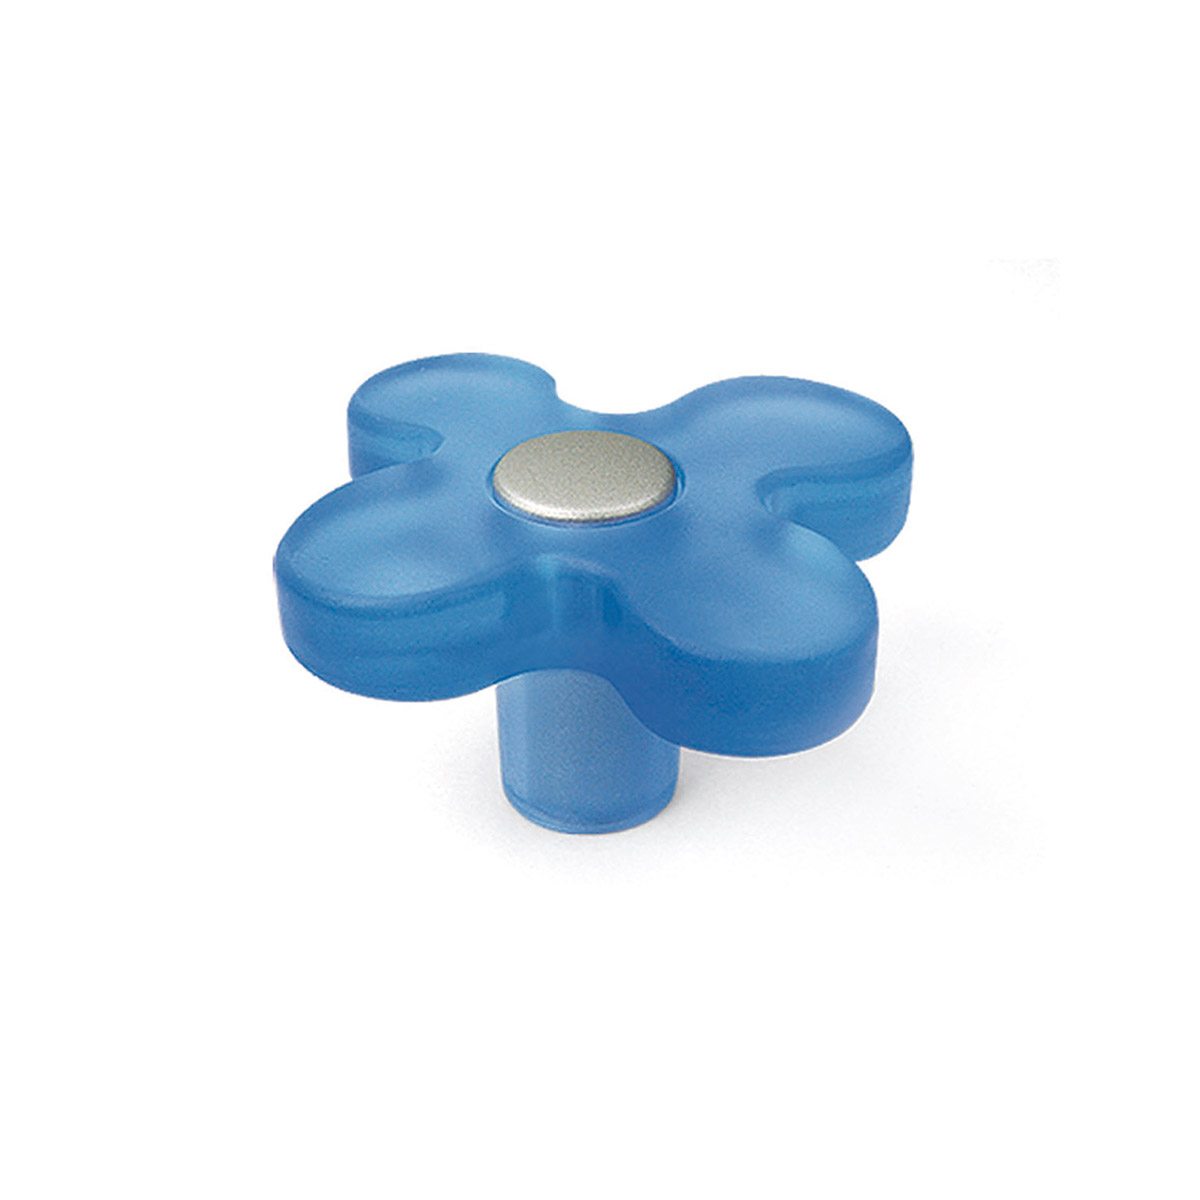 Bouton en plastique avec finition bleue, dimensions: 49x49x26mm Ø: 49mm